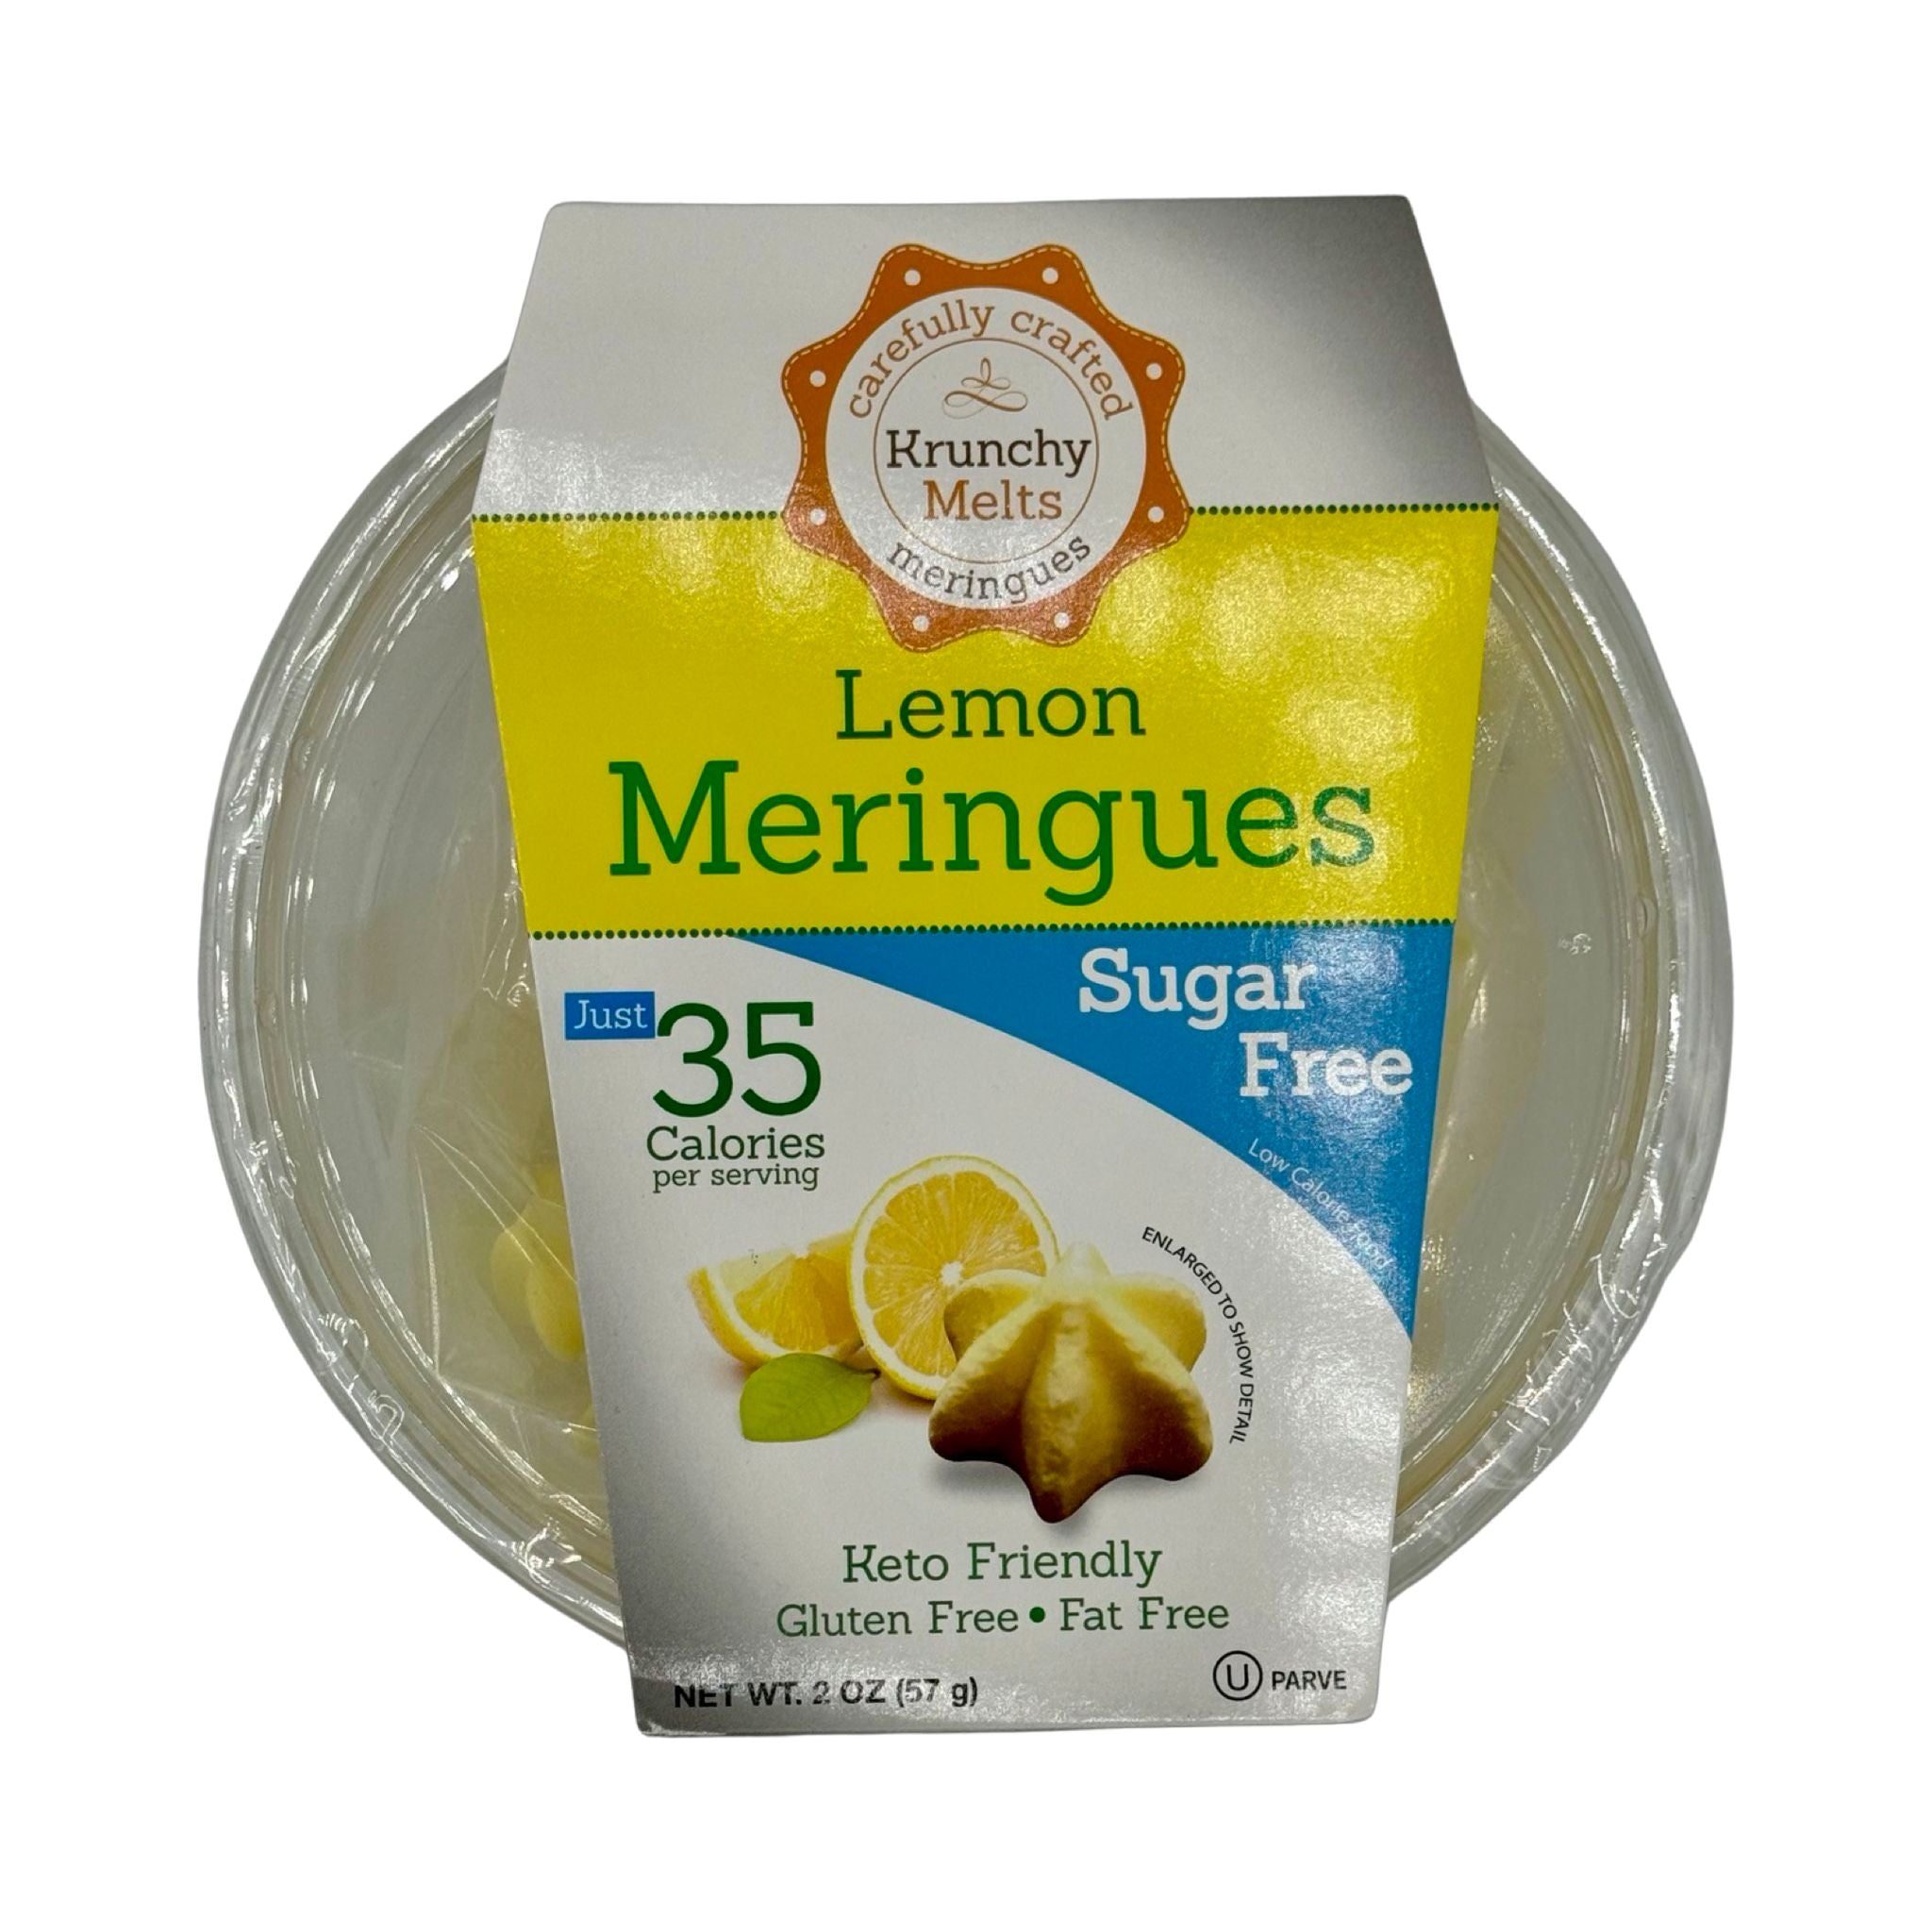 #Flavor_Lemon #Size_2 oz.